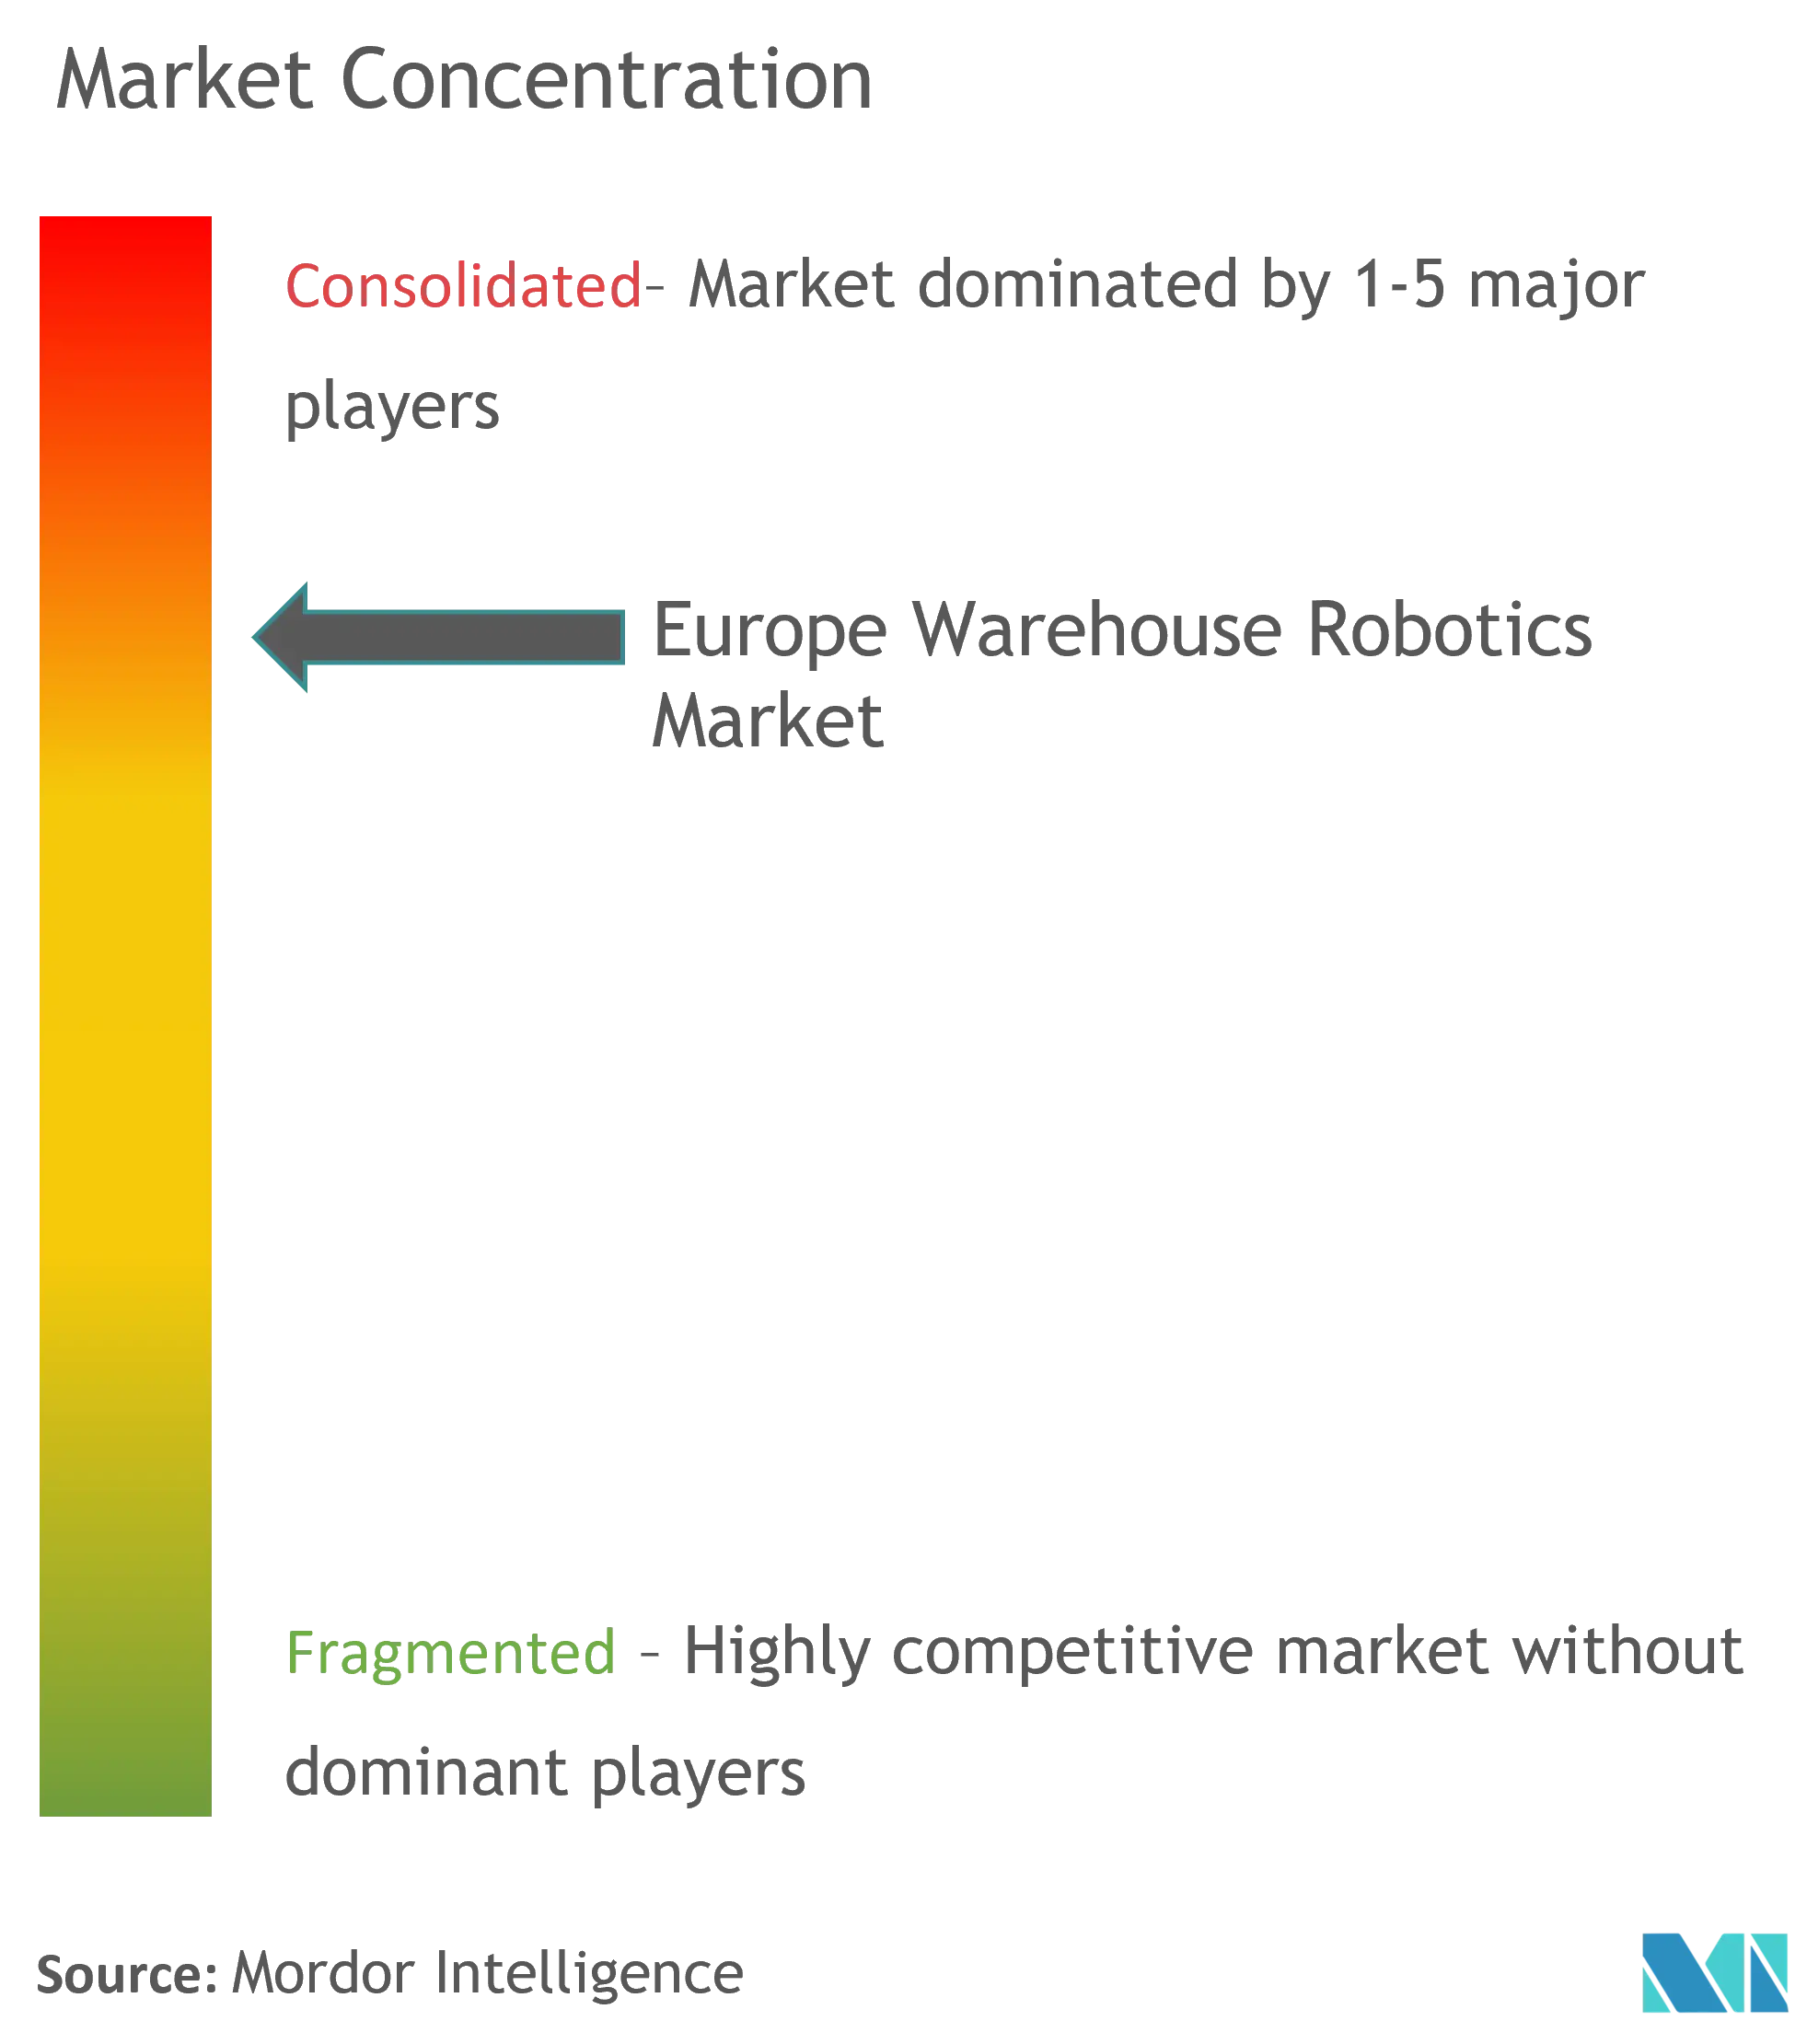 Concentración del mercado europeo de robótica de almacén